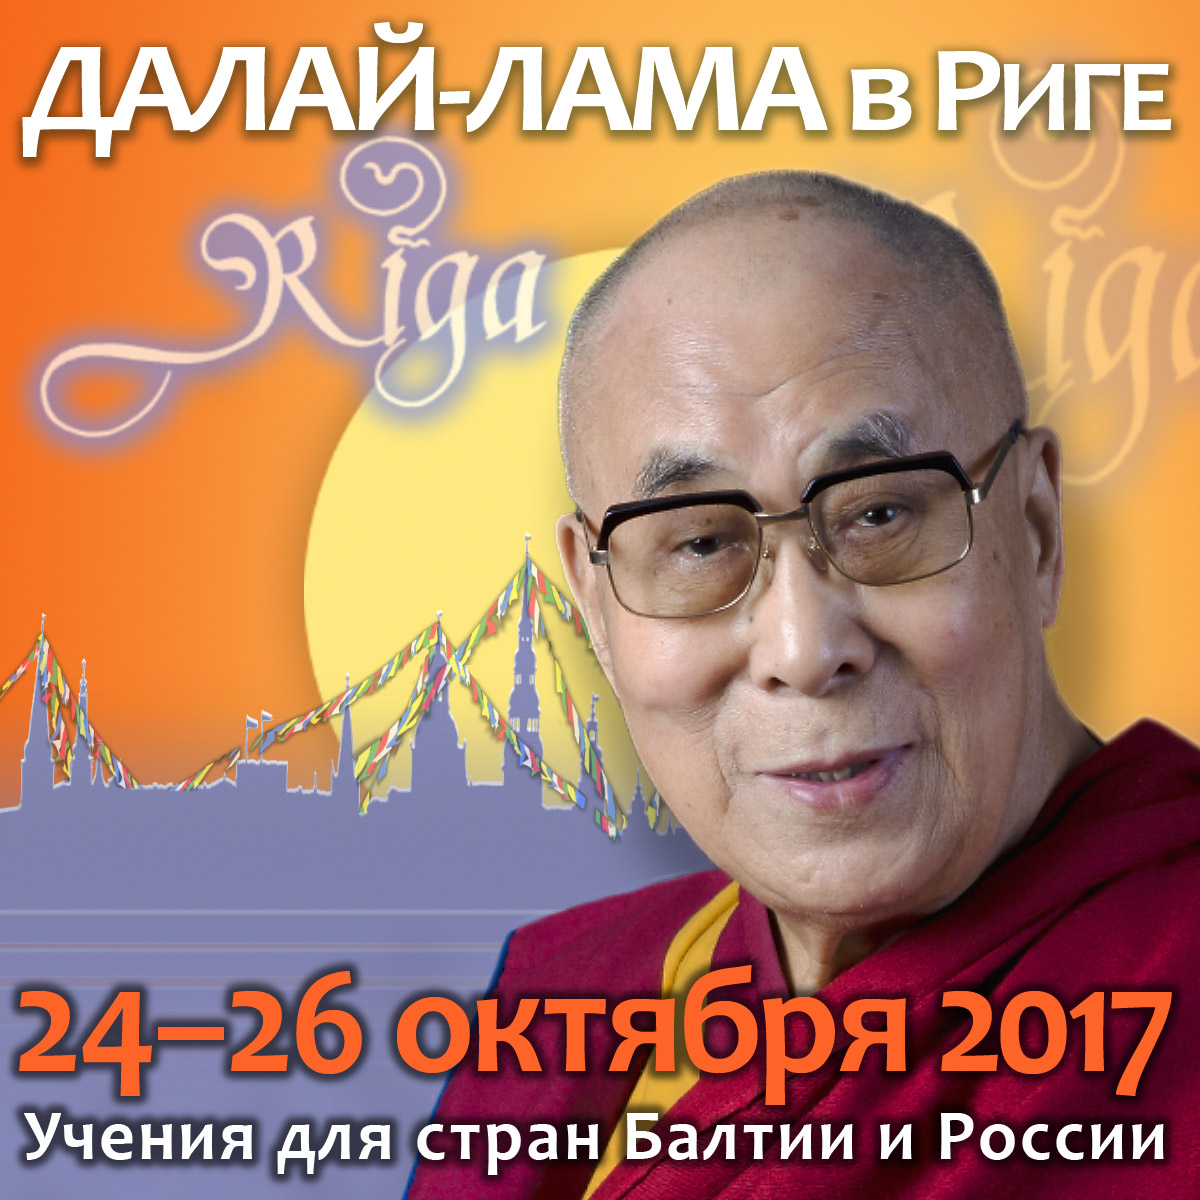 Учения Его Святейшества Далай-ламы в Риге перенесены на сентябрь!